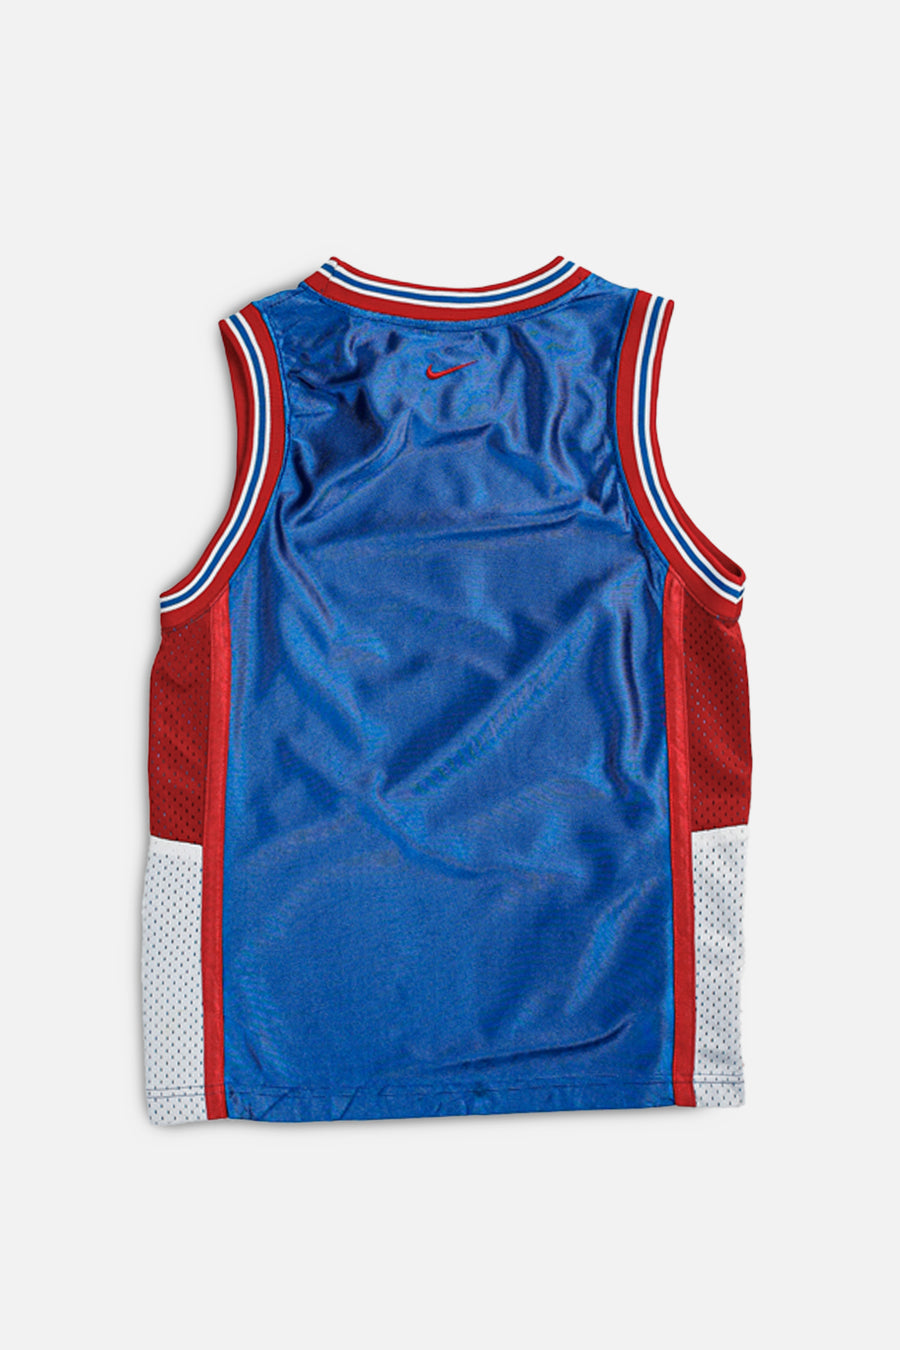 Vintage NBA Jersey - XS